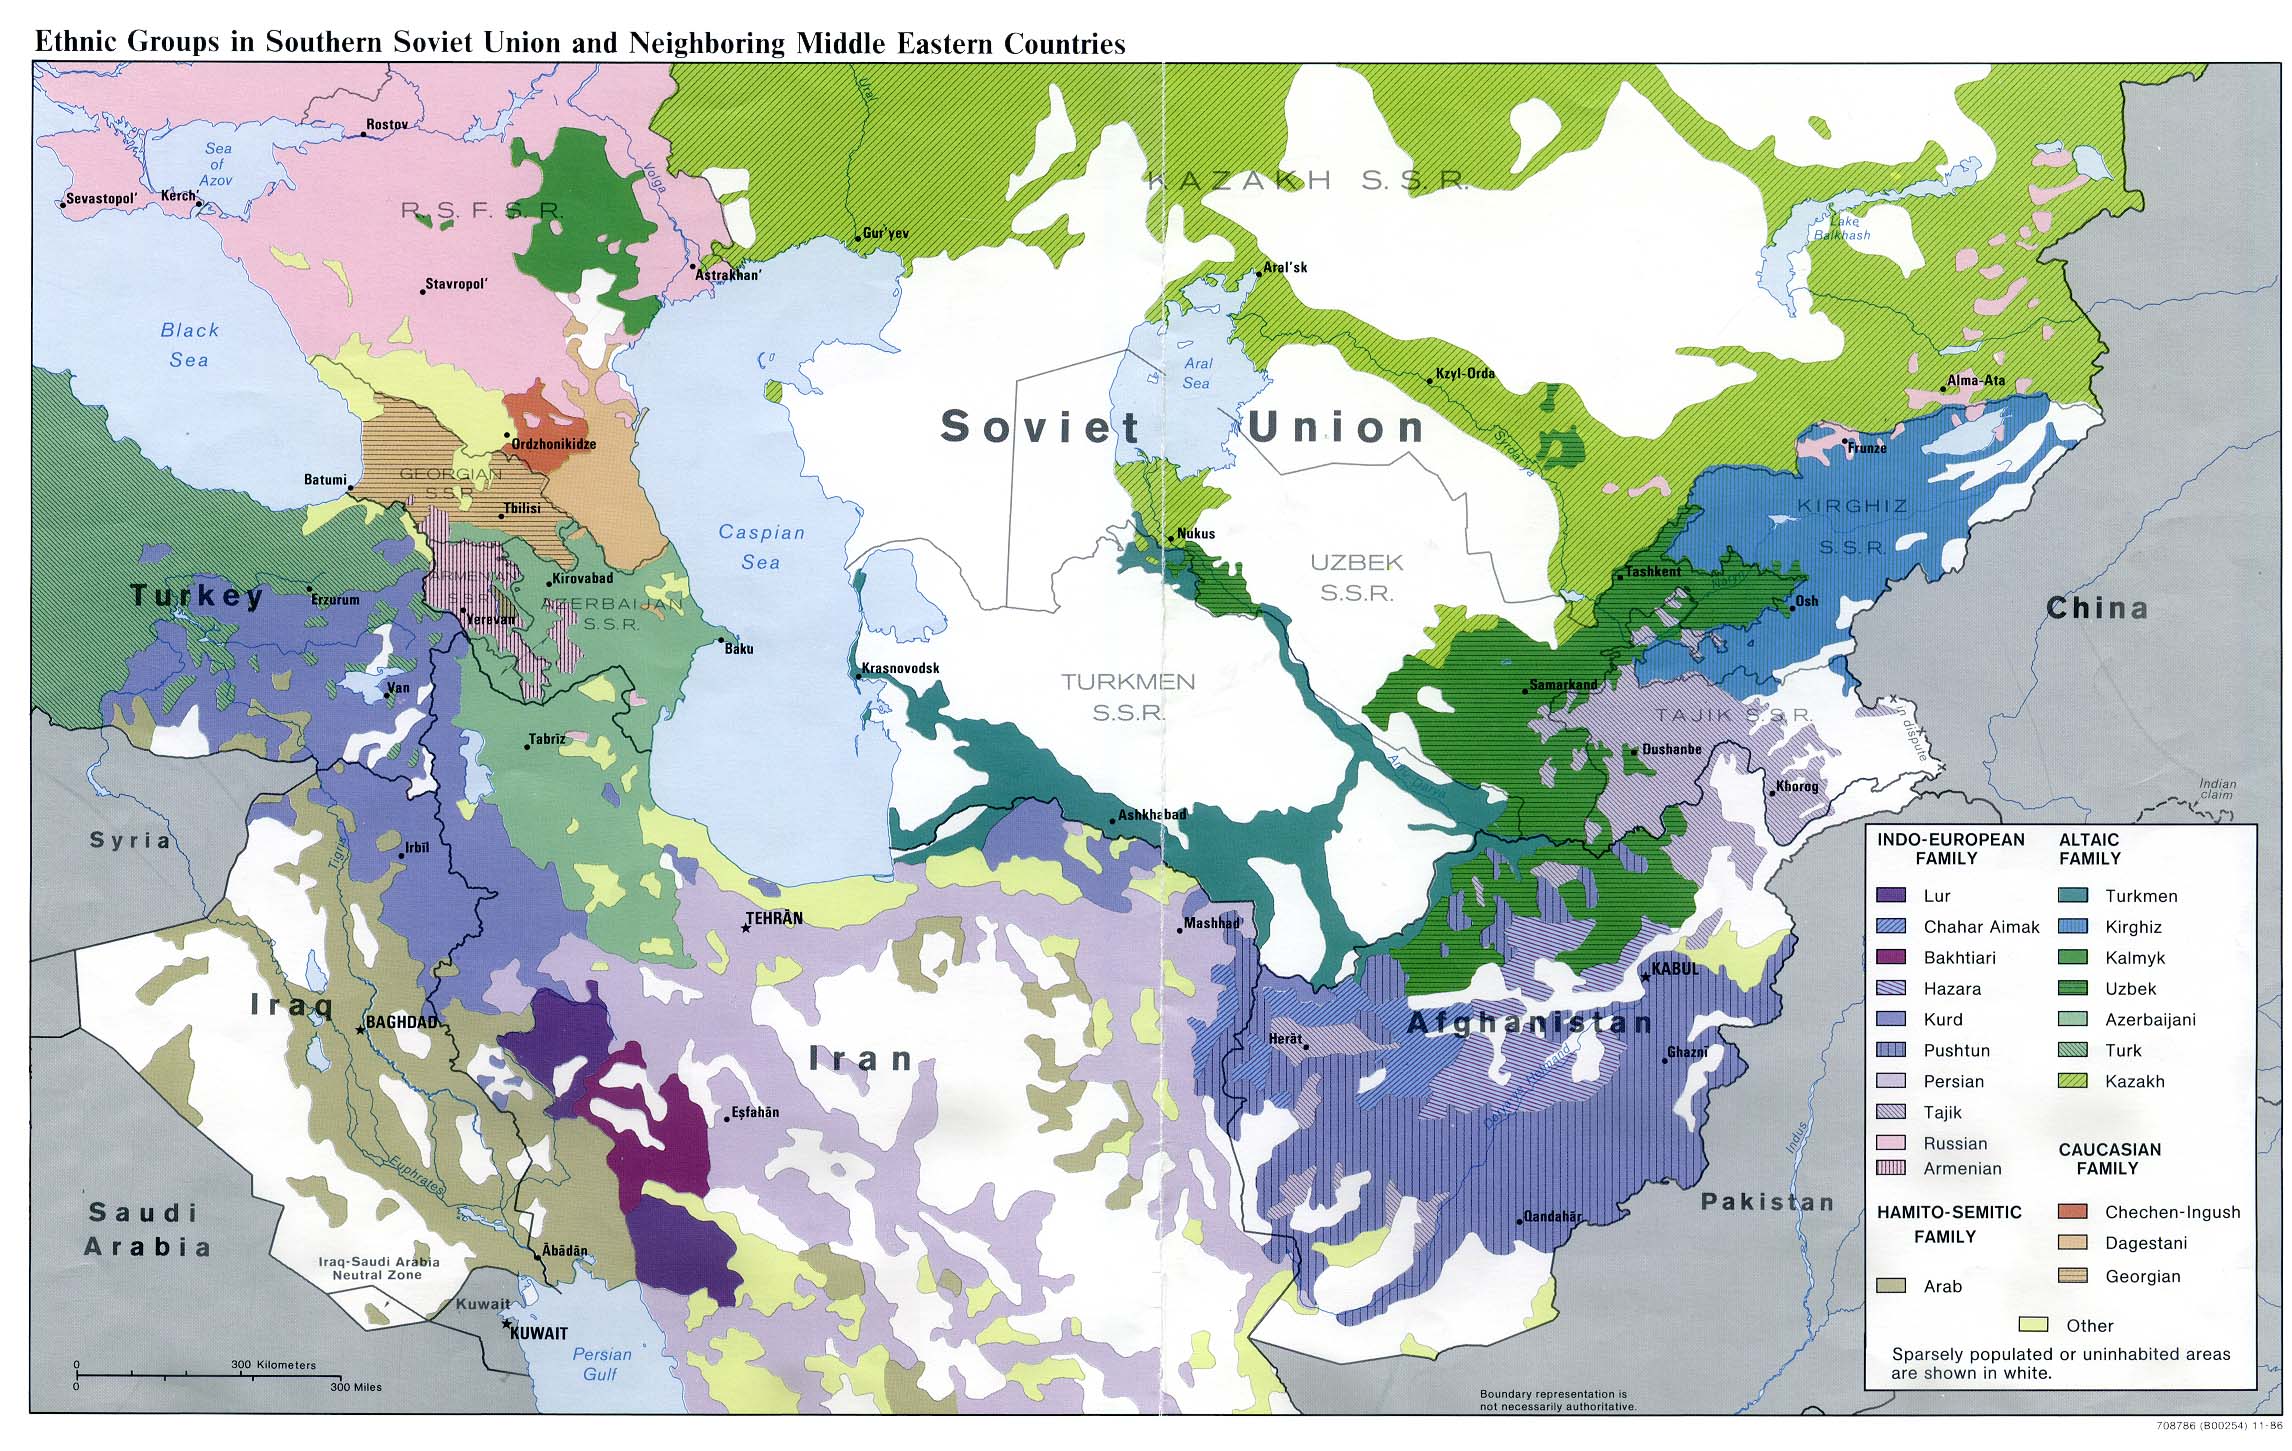 Mapa de los Grupos Étnicos del sur de la Unión Soviética y de los Países Vecinos del Oriente Medio